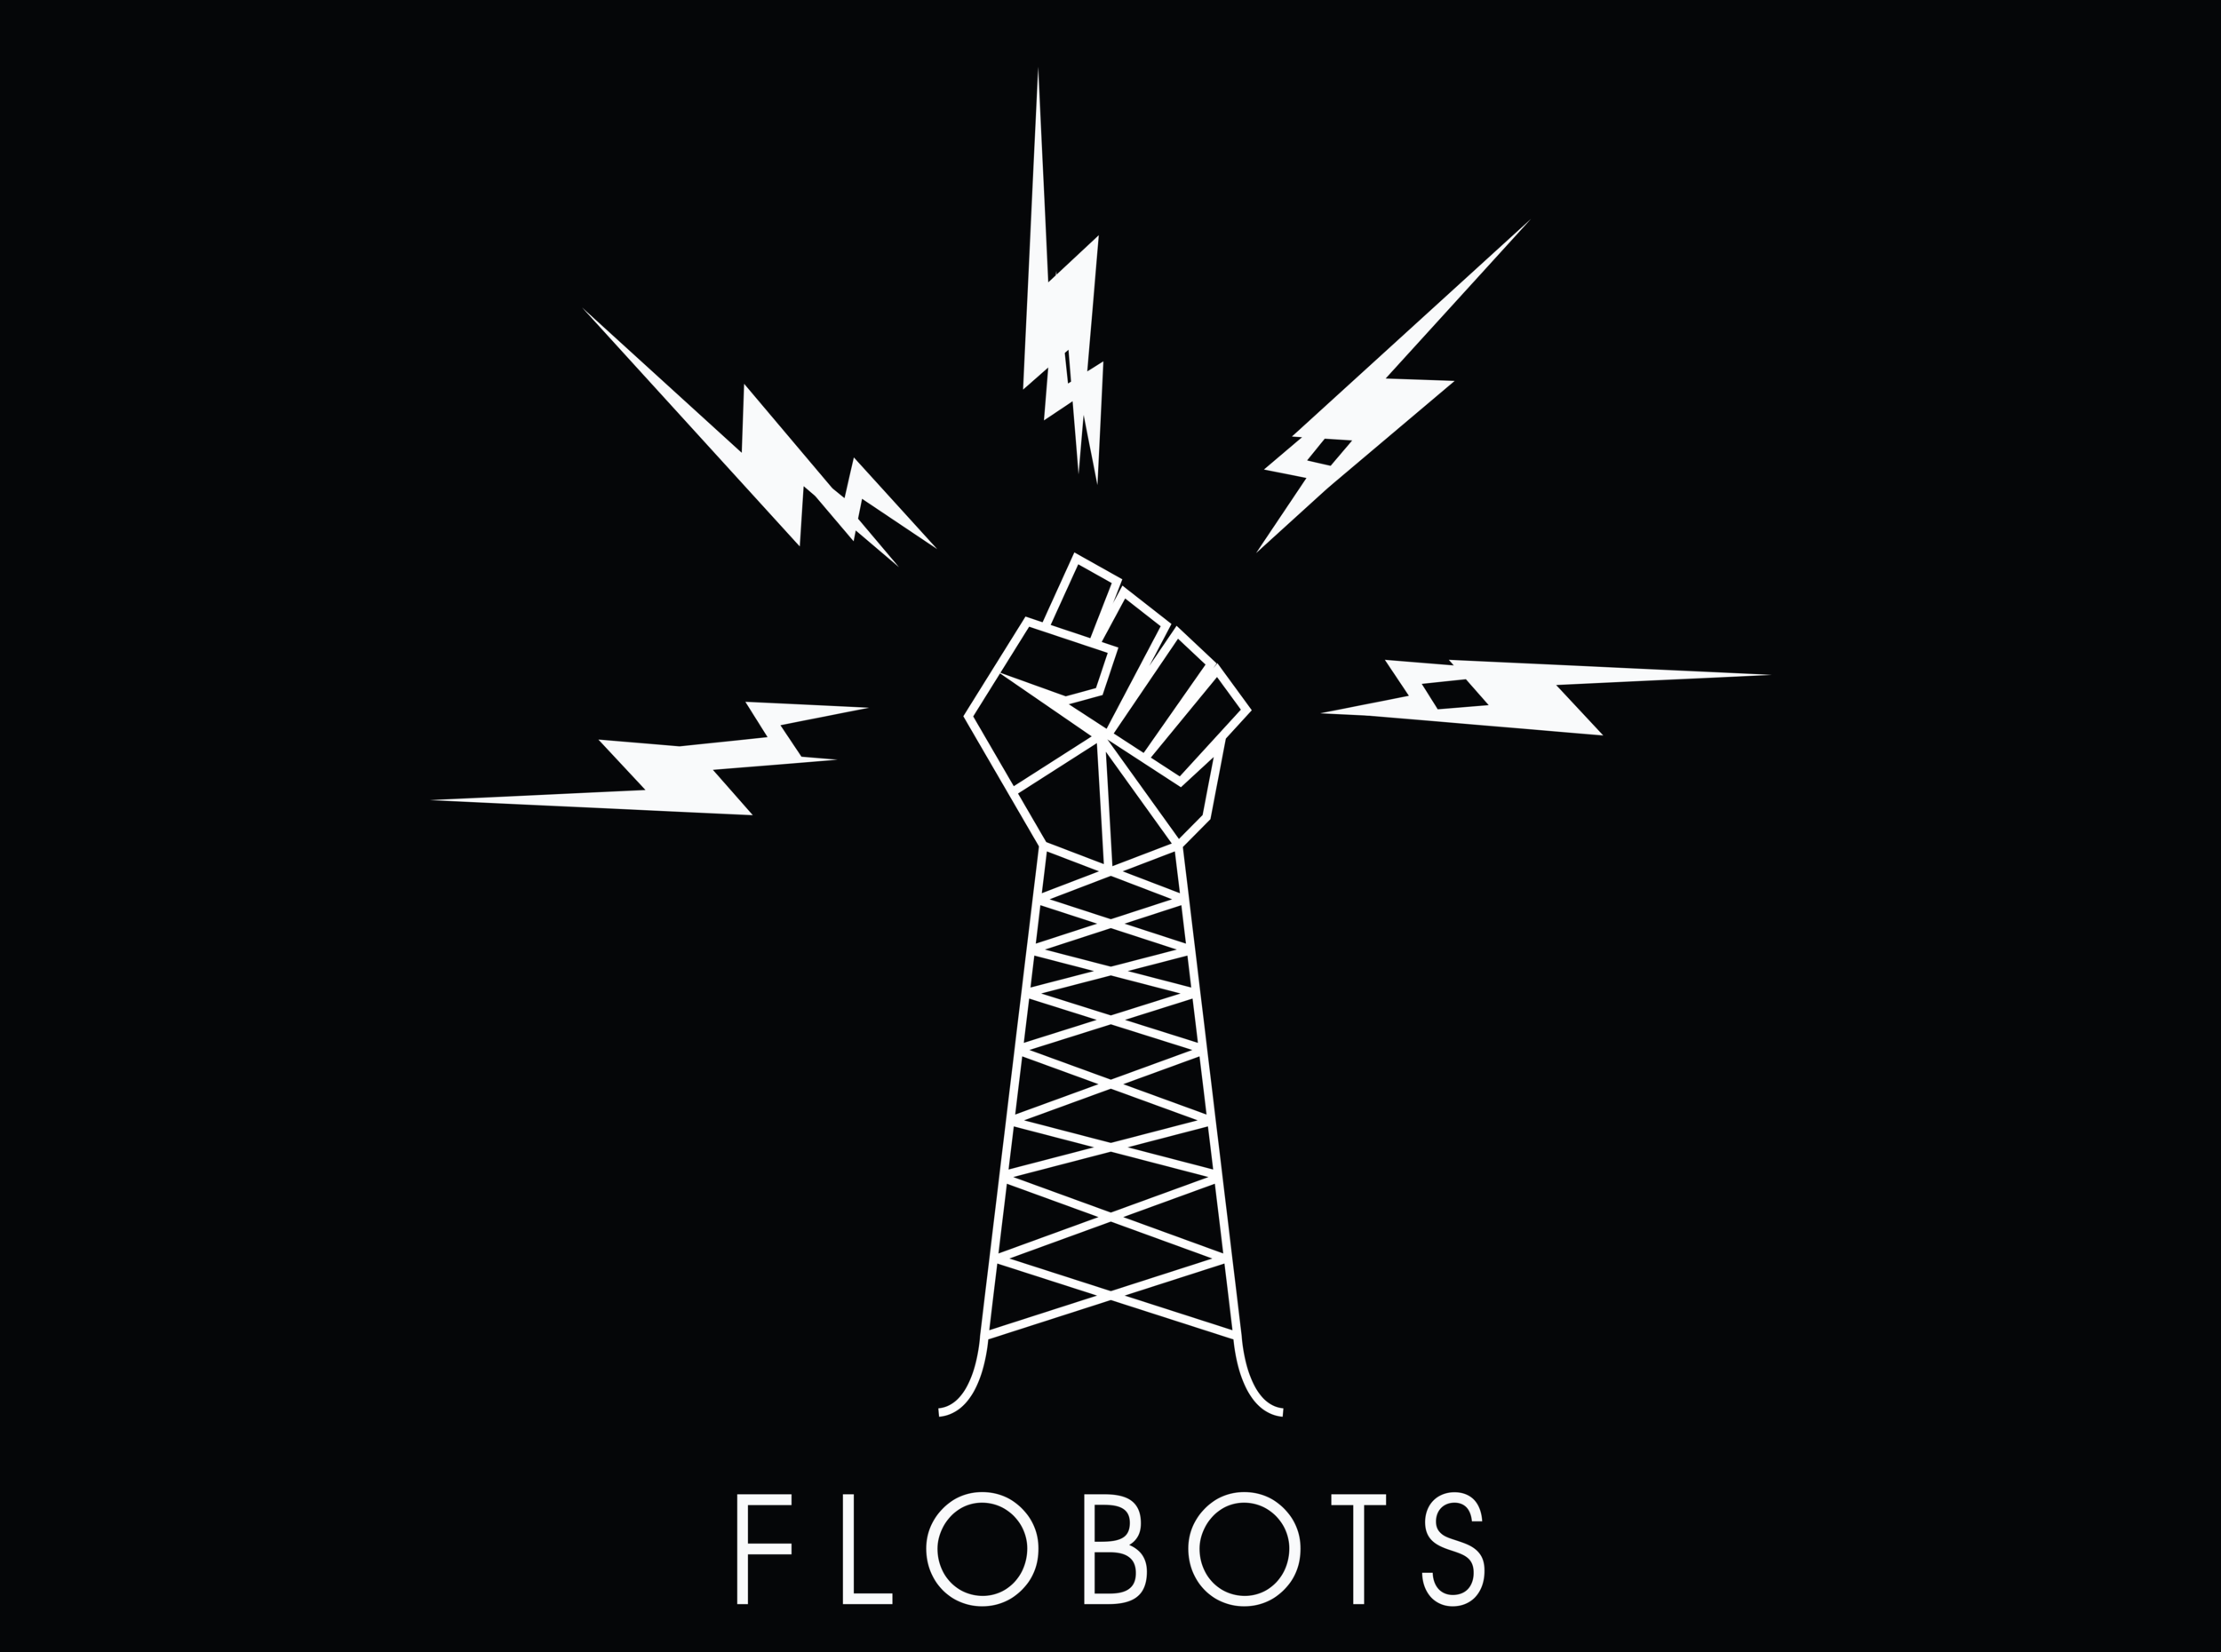 Flobots logo-2.png